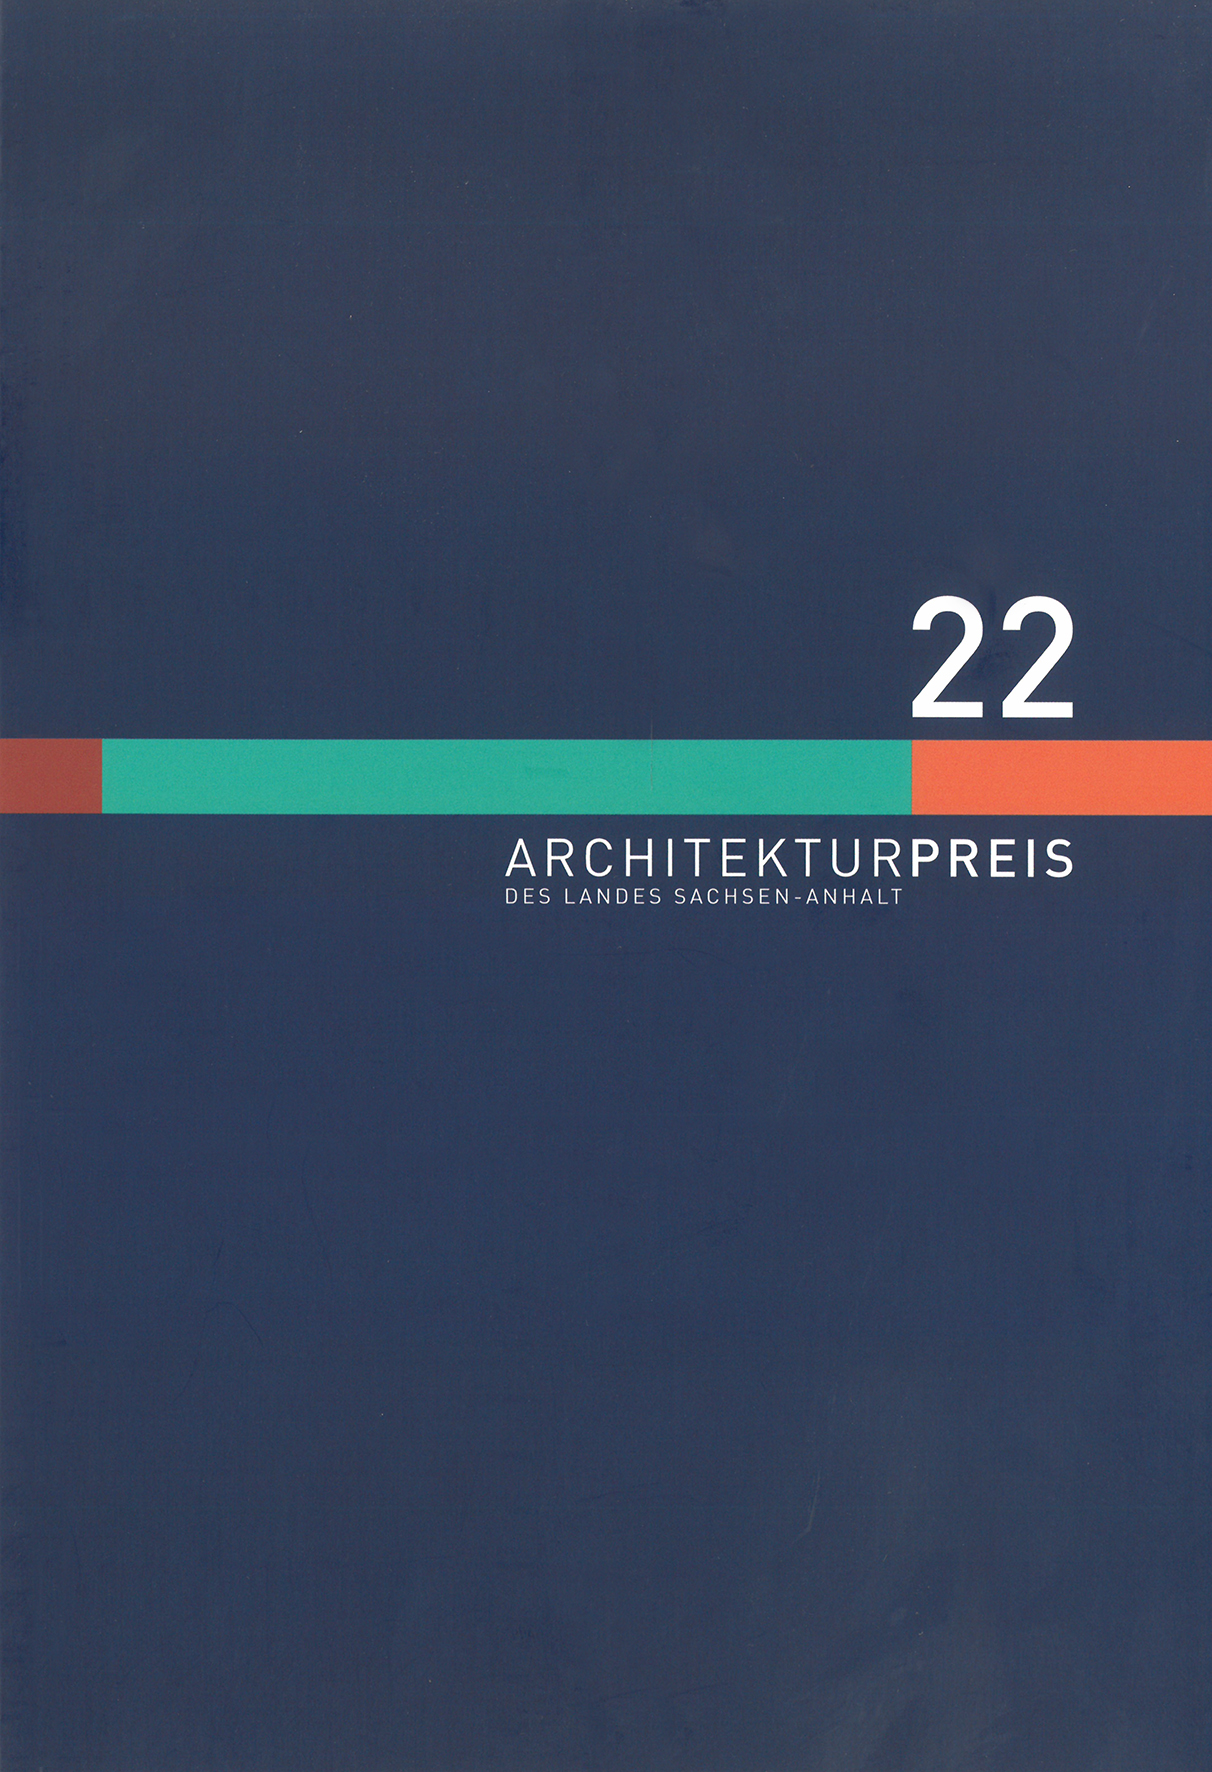 Architekturpreis 2022 Titelbild